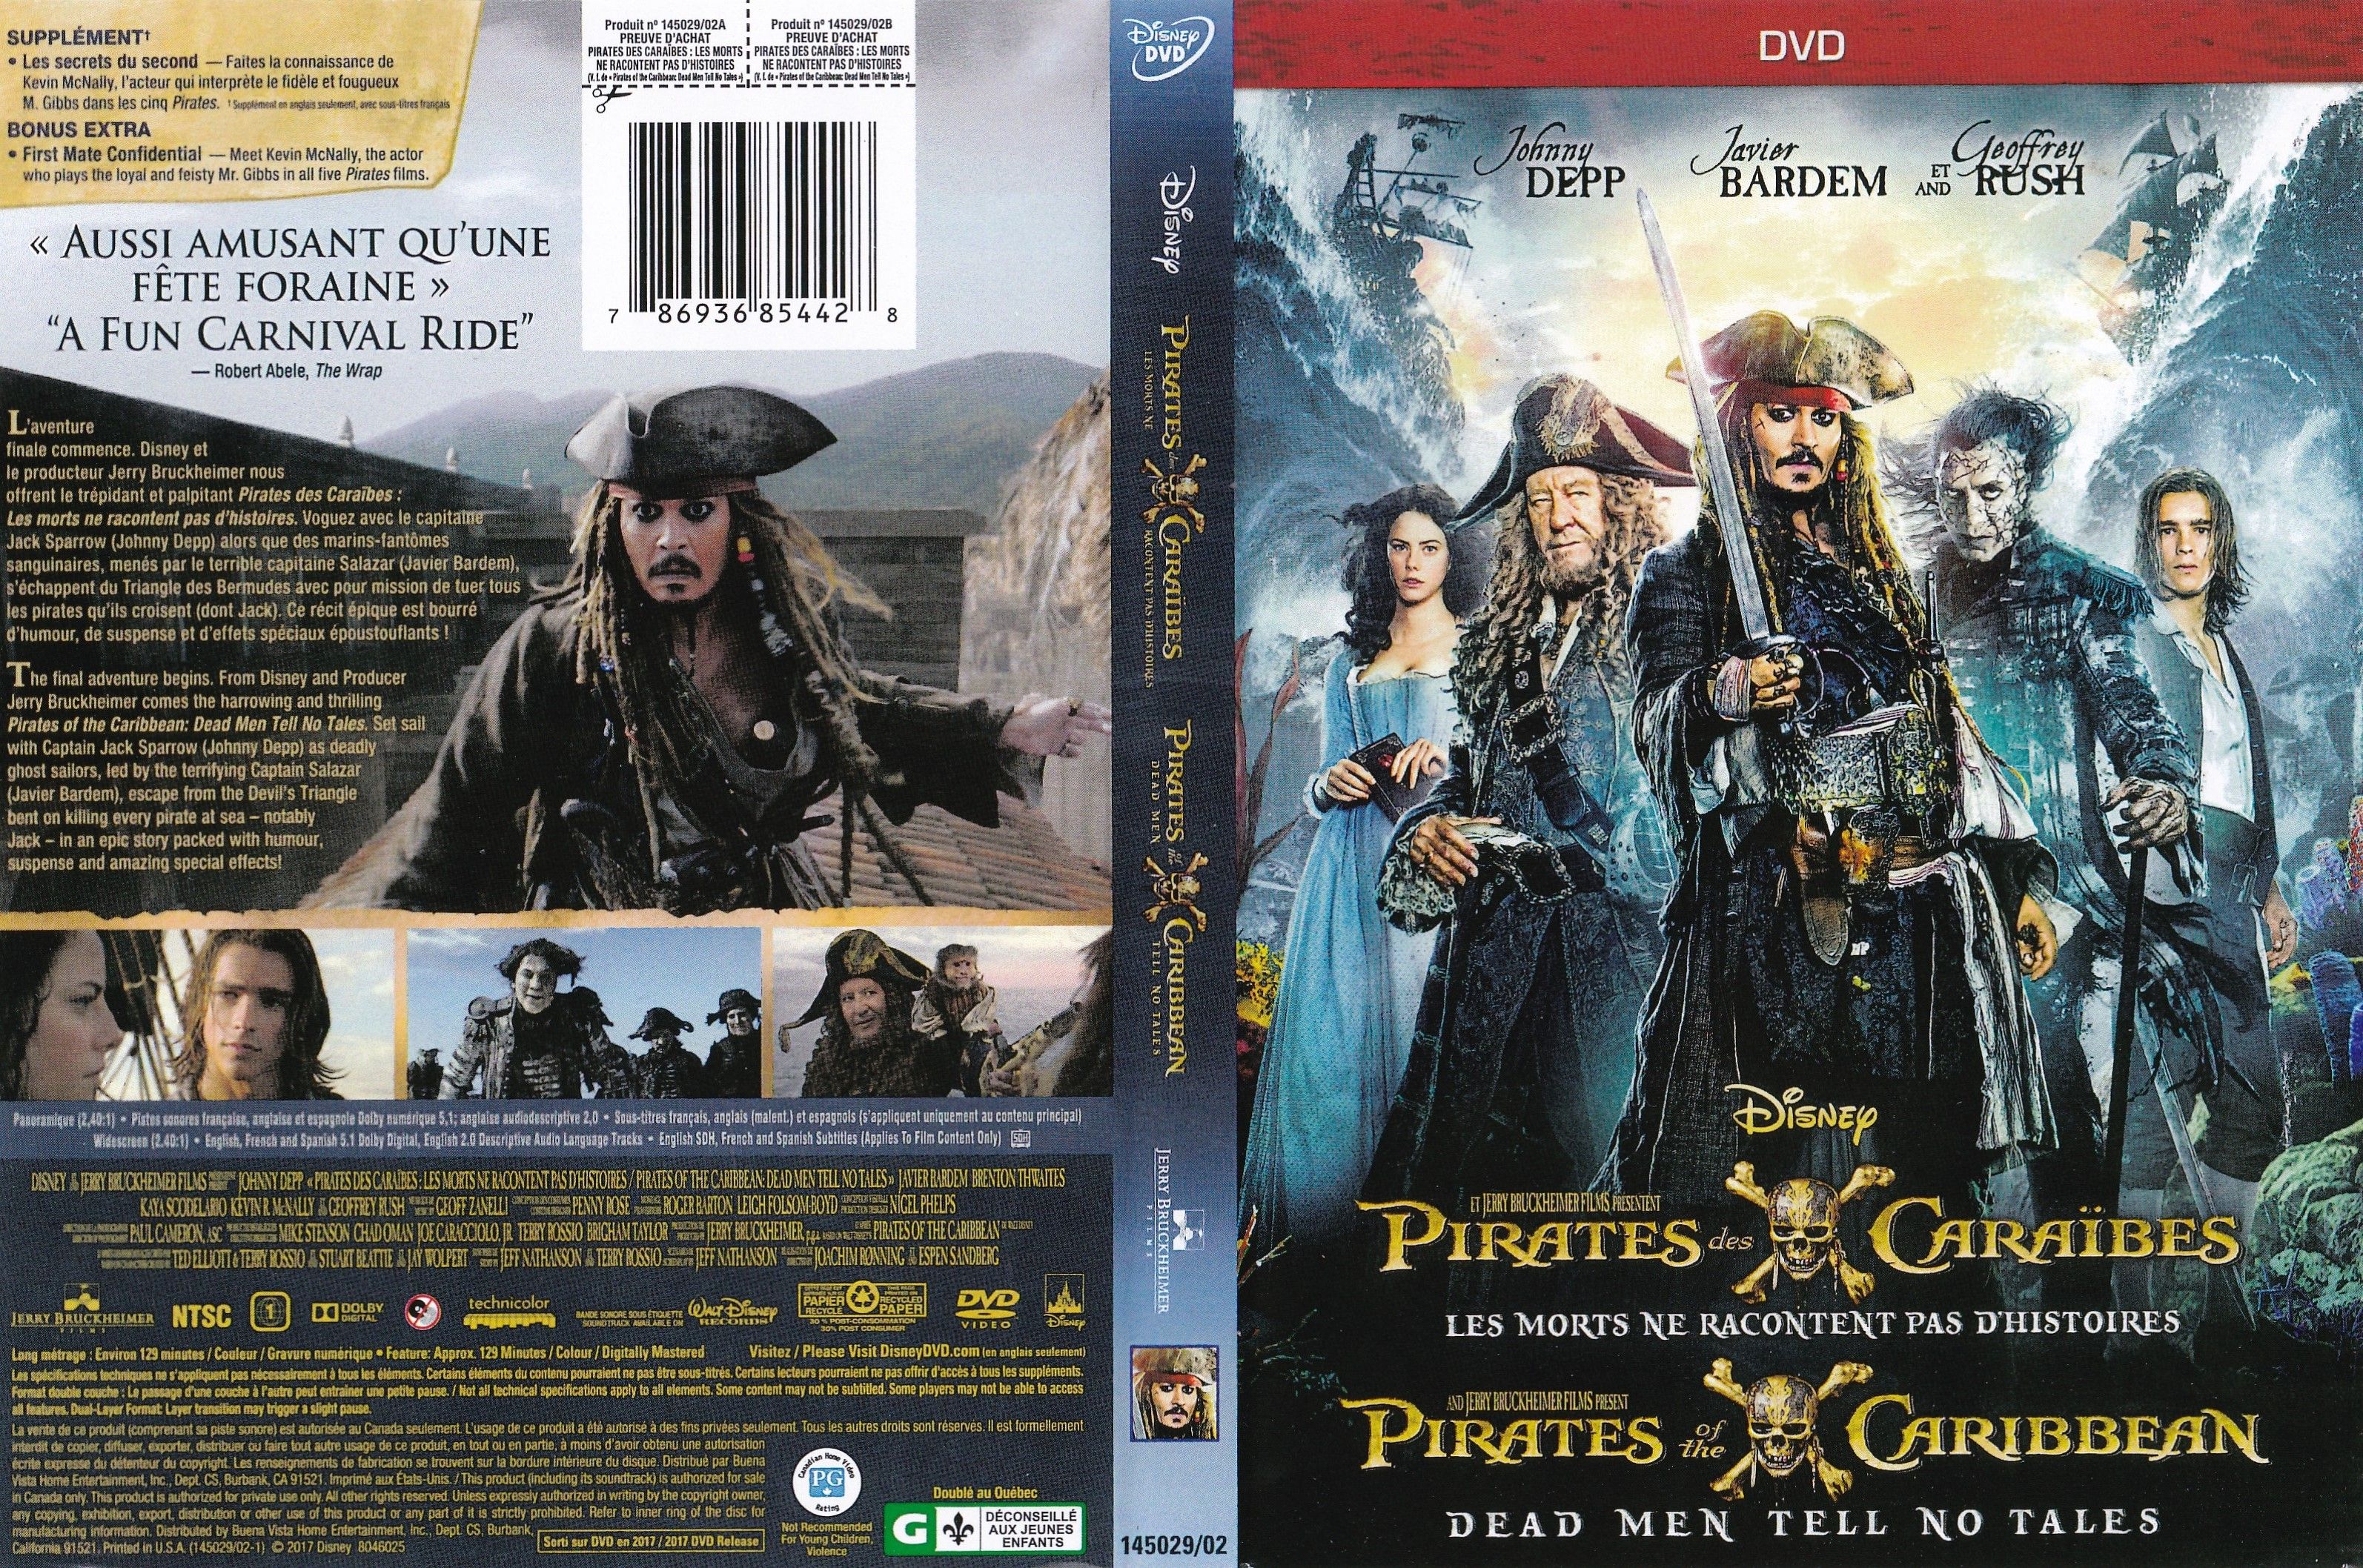 Jaquette DVD Pirates des caraibes 5 - Les morts ne racontes pas d histoire (canadienne)